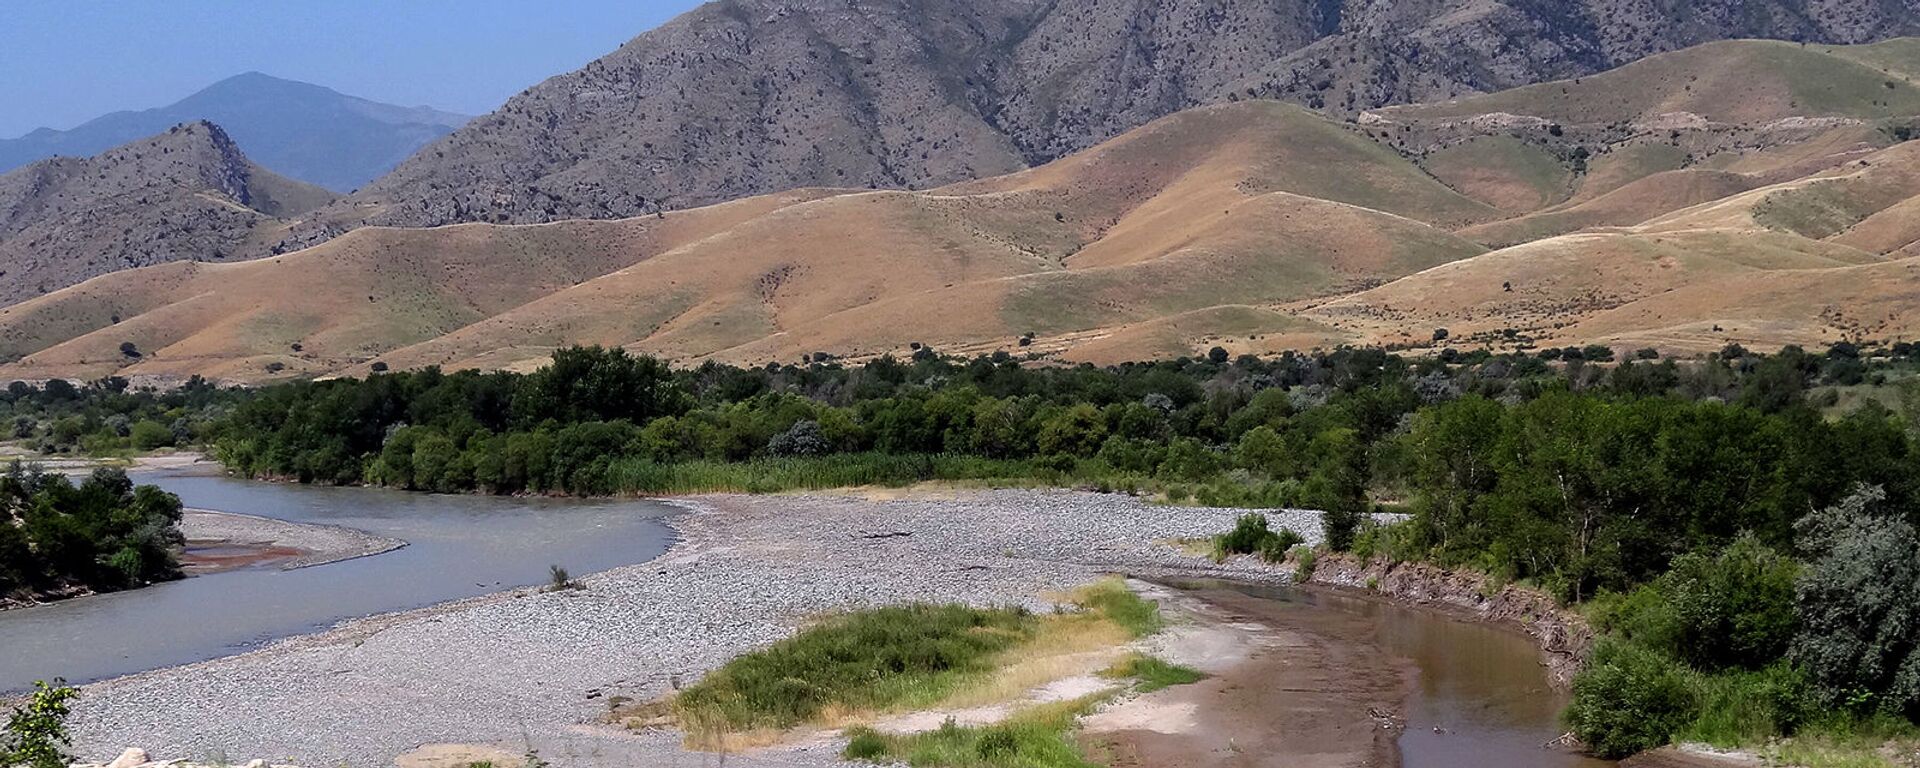 Река Аракс с границами между Карабахом, Ираном и Азербайджаном - Sputnik Армения, 1920, 04.10.2021